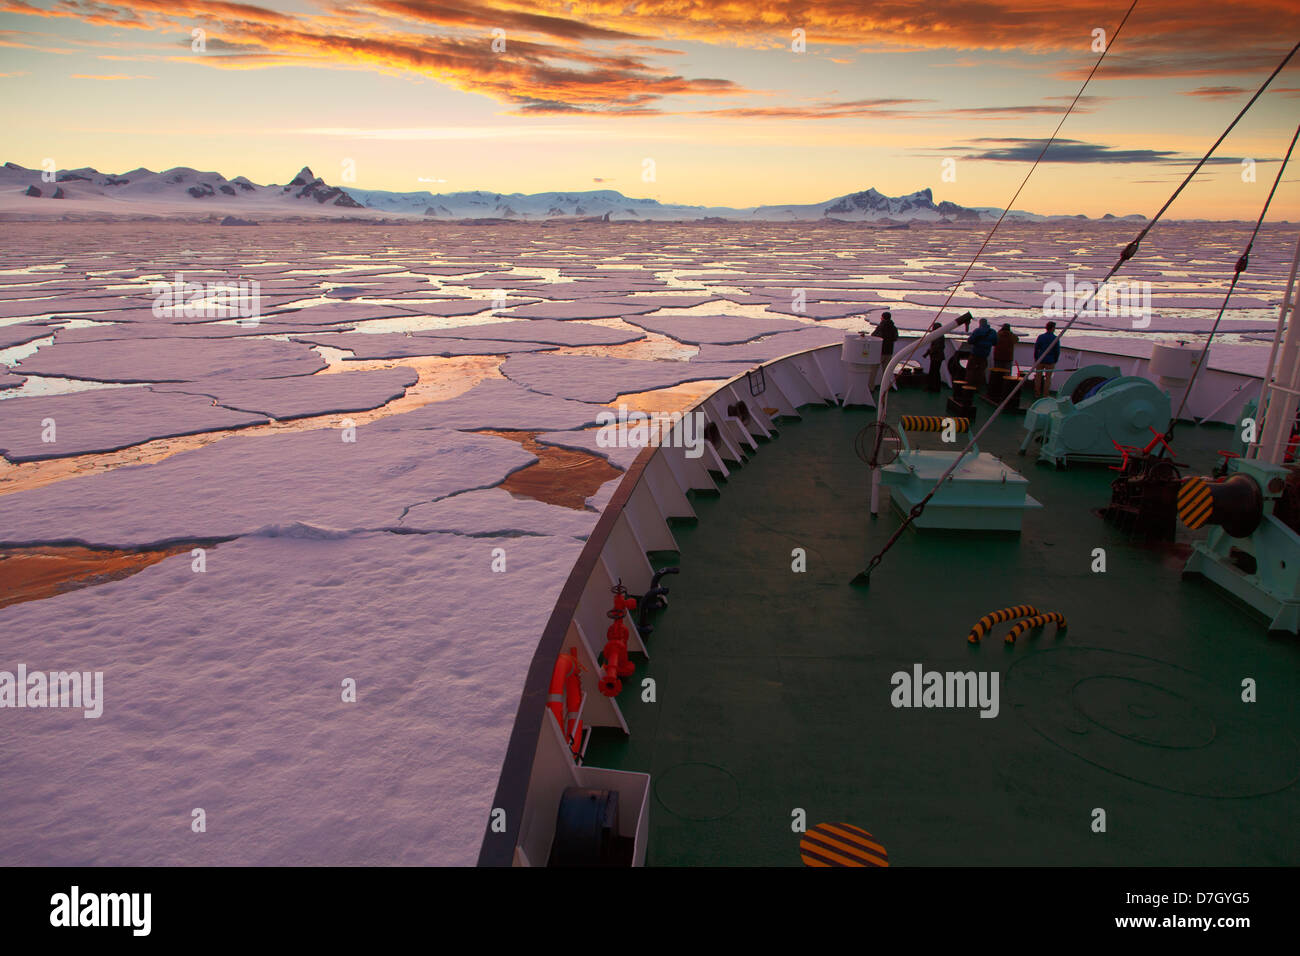 Icebreaker Ortelius muovendo attraverso il ghiaccio al tramonto / sunrise come siamo in viaggio al di sotto del circolo Antartico, l'Antartide. Foto Stock